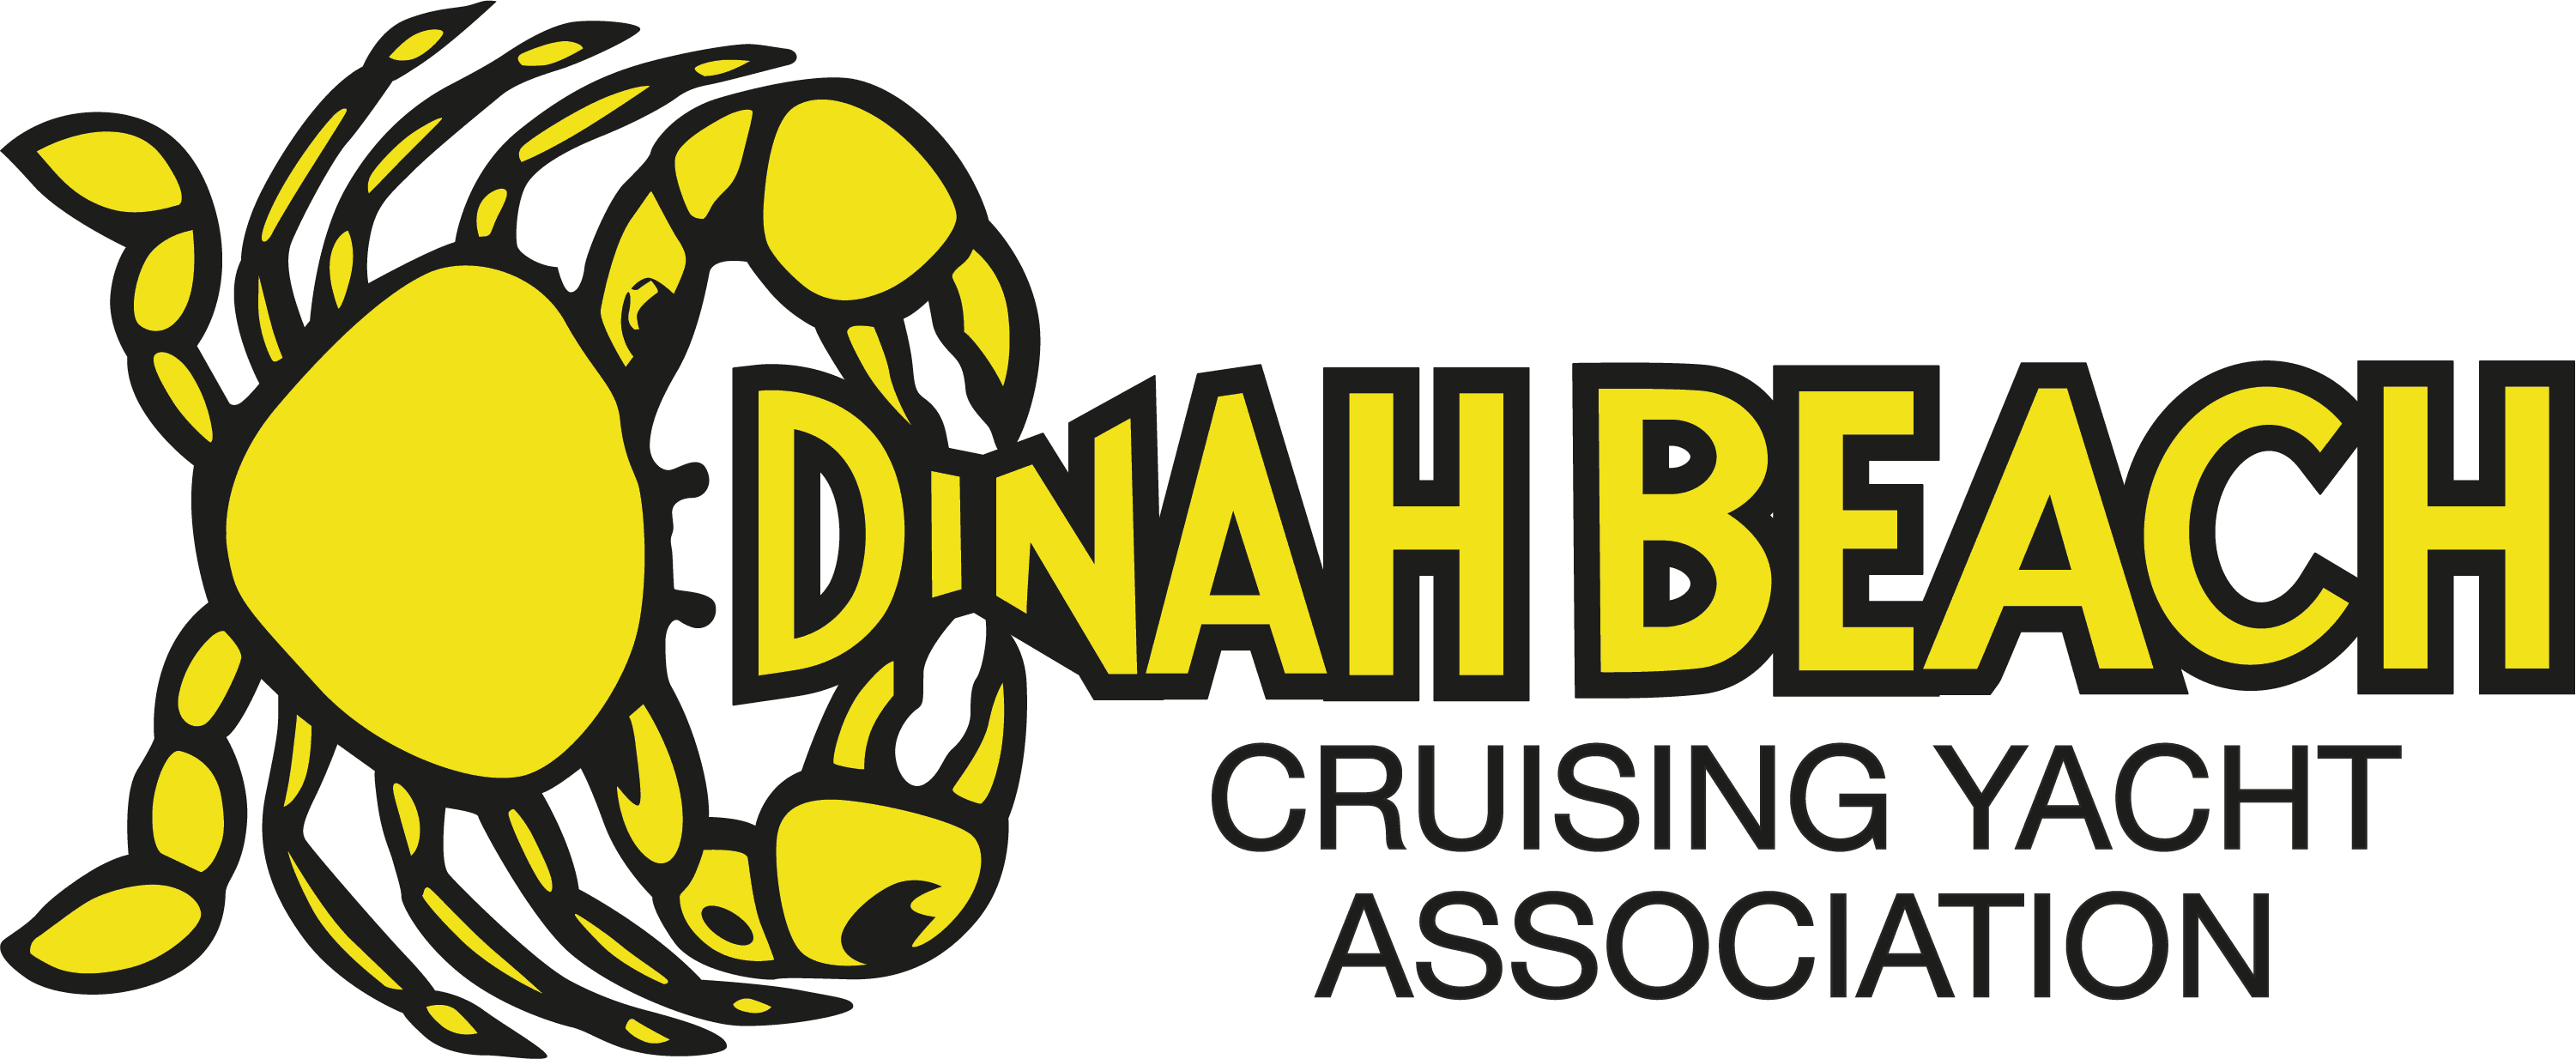 dinah beach cruising yacht association